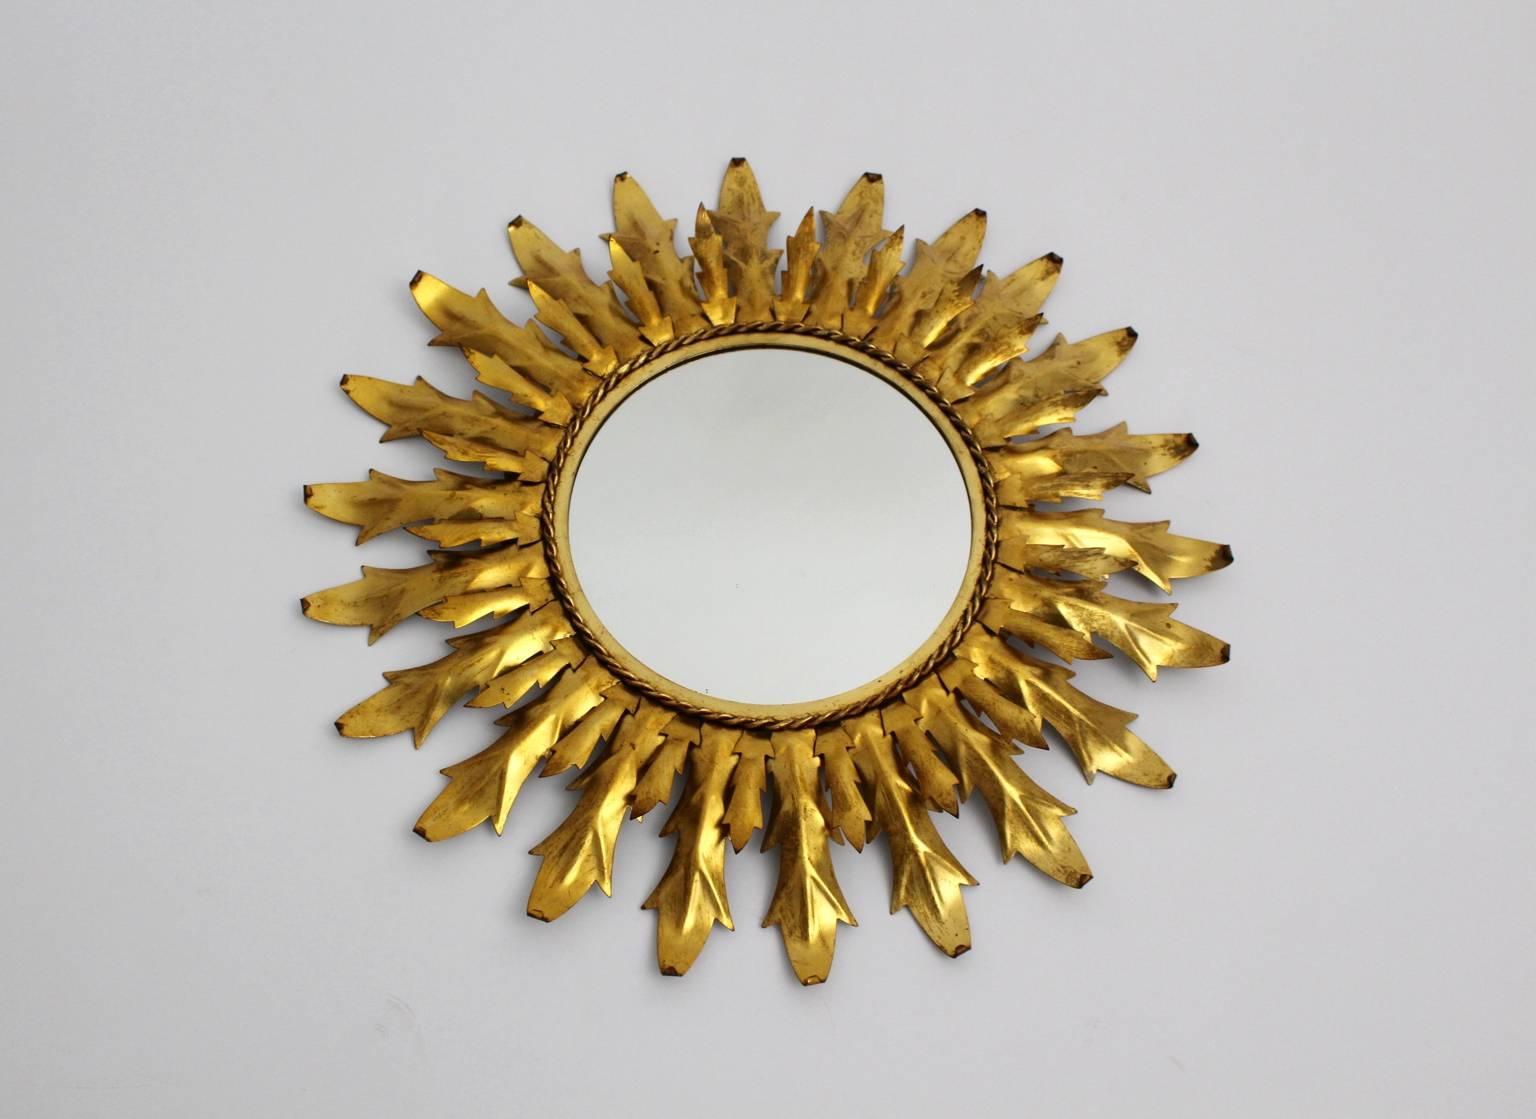 Mid Century Modern vergoldetes Metall sunburst Spiegel oder Wandspiegel mit geschwungenen Blätter, die in Italien gemacht wurde, um 1960.
Durchmesser des Spiegels 11,02 in. (28 cm).
Durchmesser: 66 cm (25,98 Zoll).
Tiefe 6 cm (2,36 Zoll).
 Alle Maße